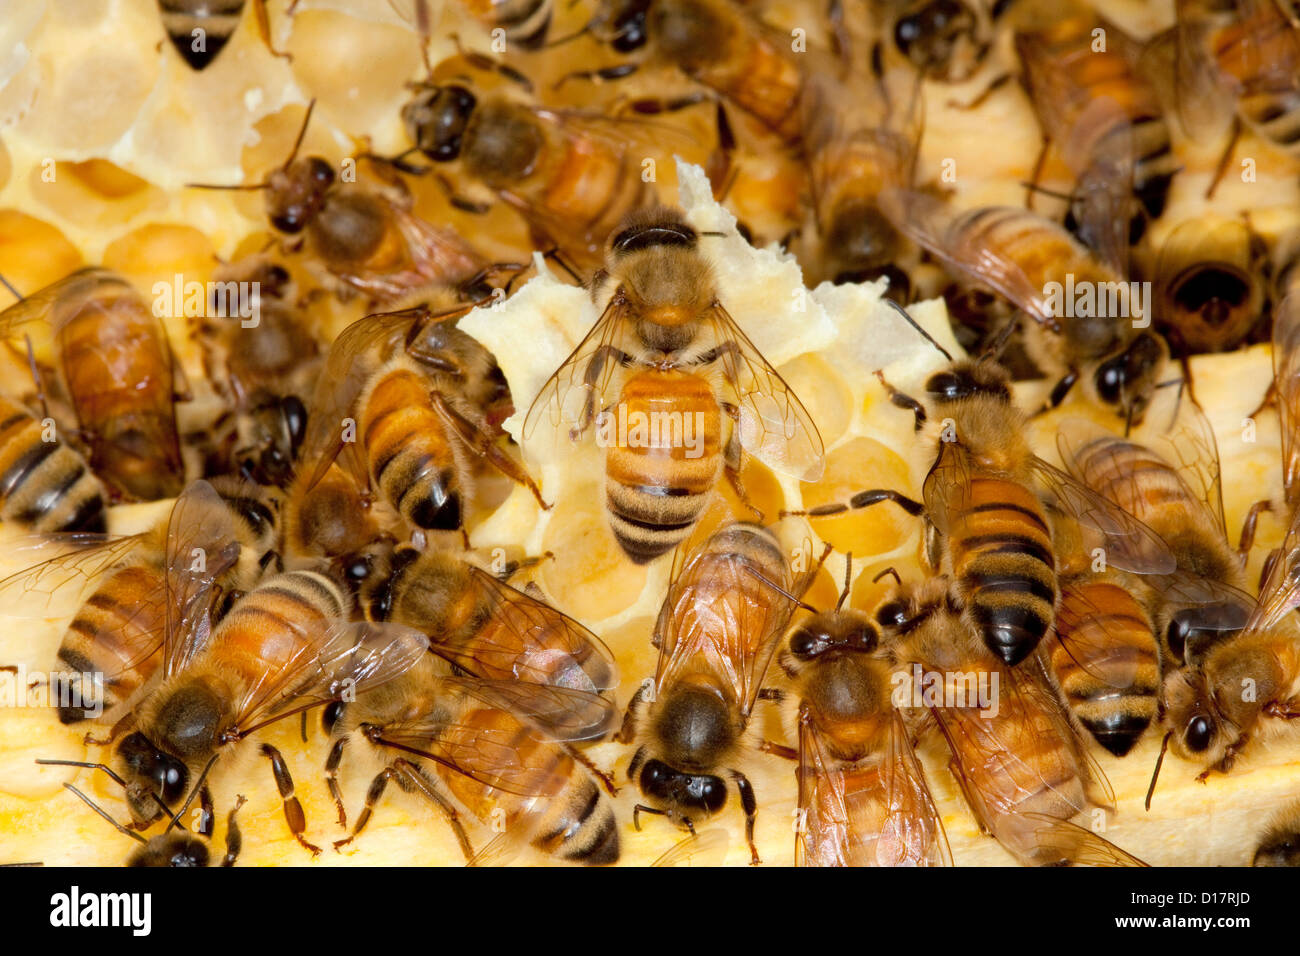 Una colonia de abejas en una colmena. Foto de stock